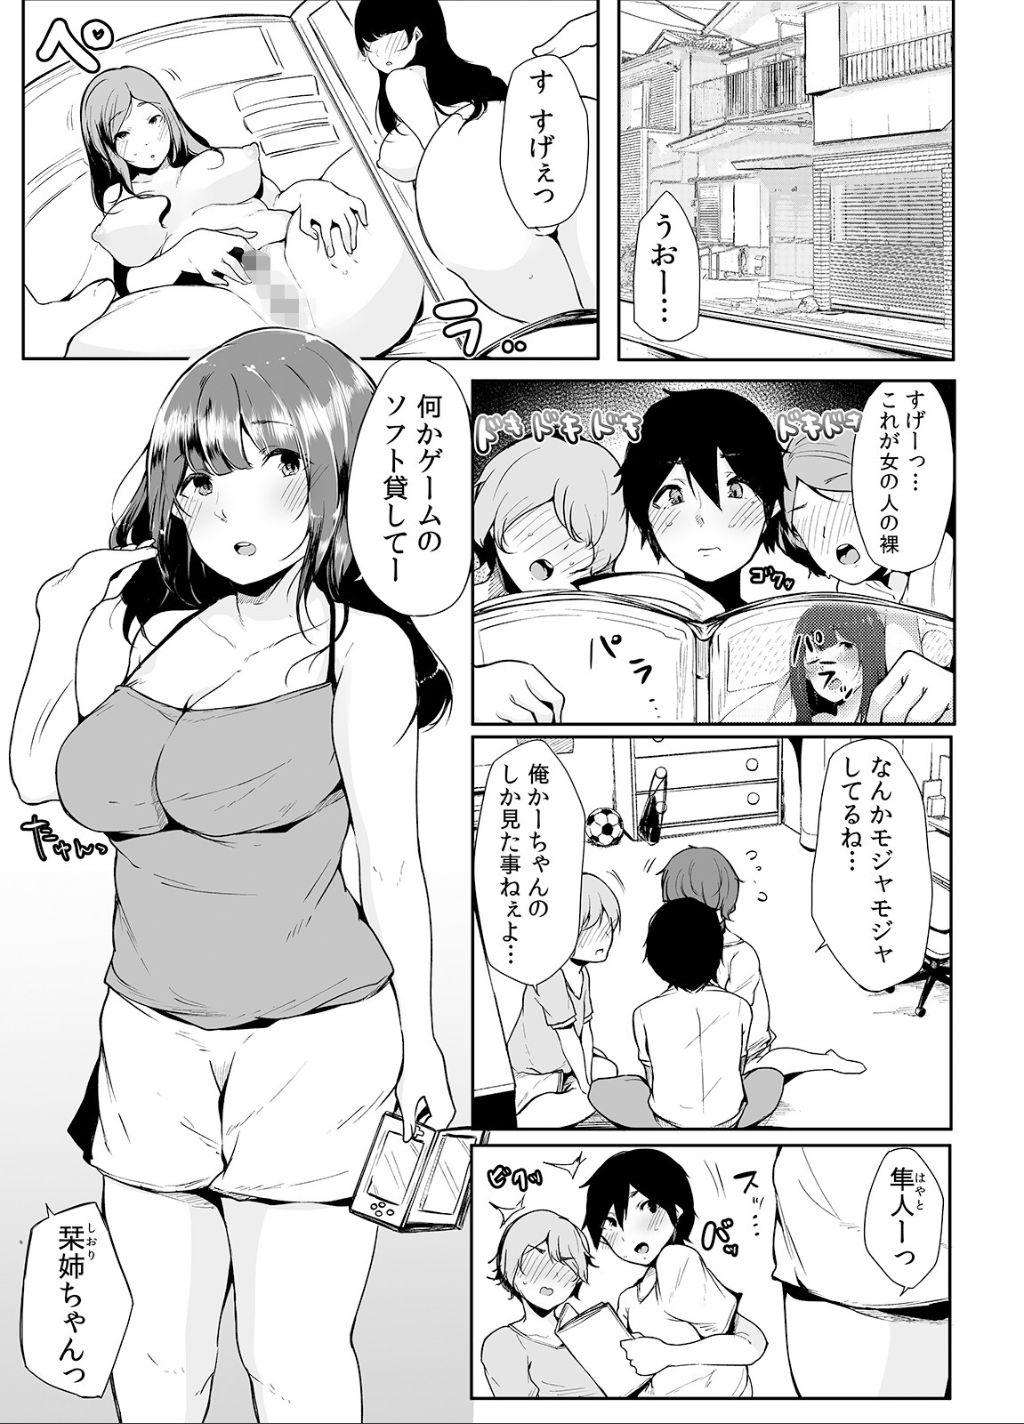 No Condom Otouto ni Ero Manga to Onaji Koto o Sare Chau o Nee-chan no Hanashi 1 - Original Underwear - Page 4